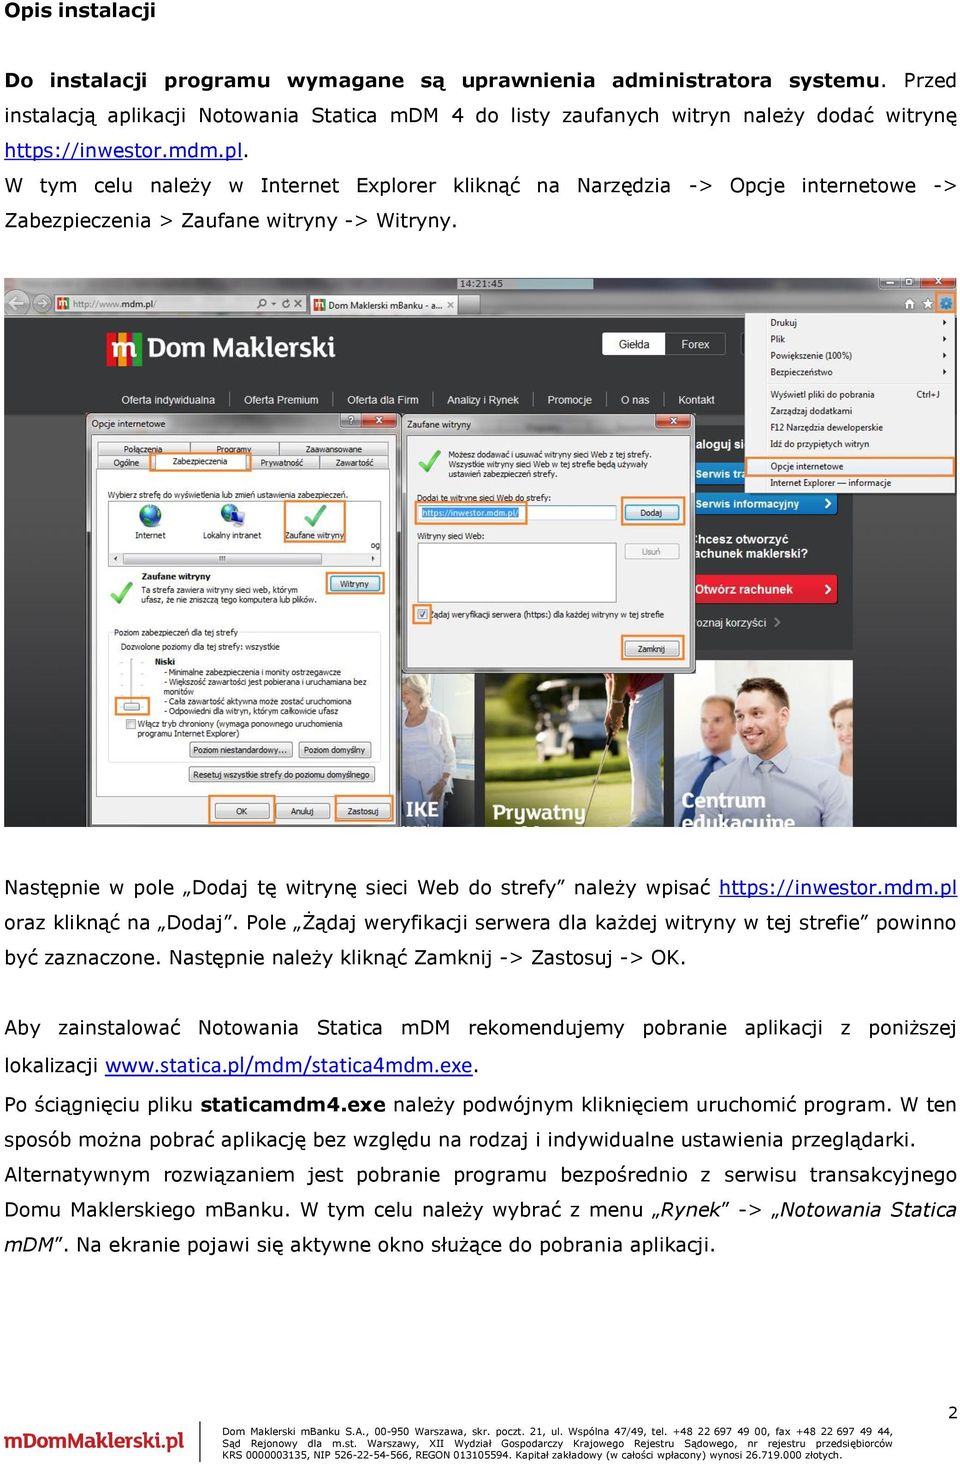 Następnie w pole Dodaj tę witrynę sieci Web do strefy należy wpisać https://inwestor.mdm.pl oraz kliknąć na Dodaj.